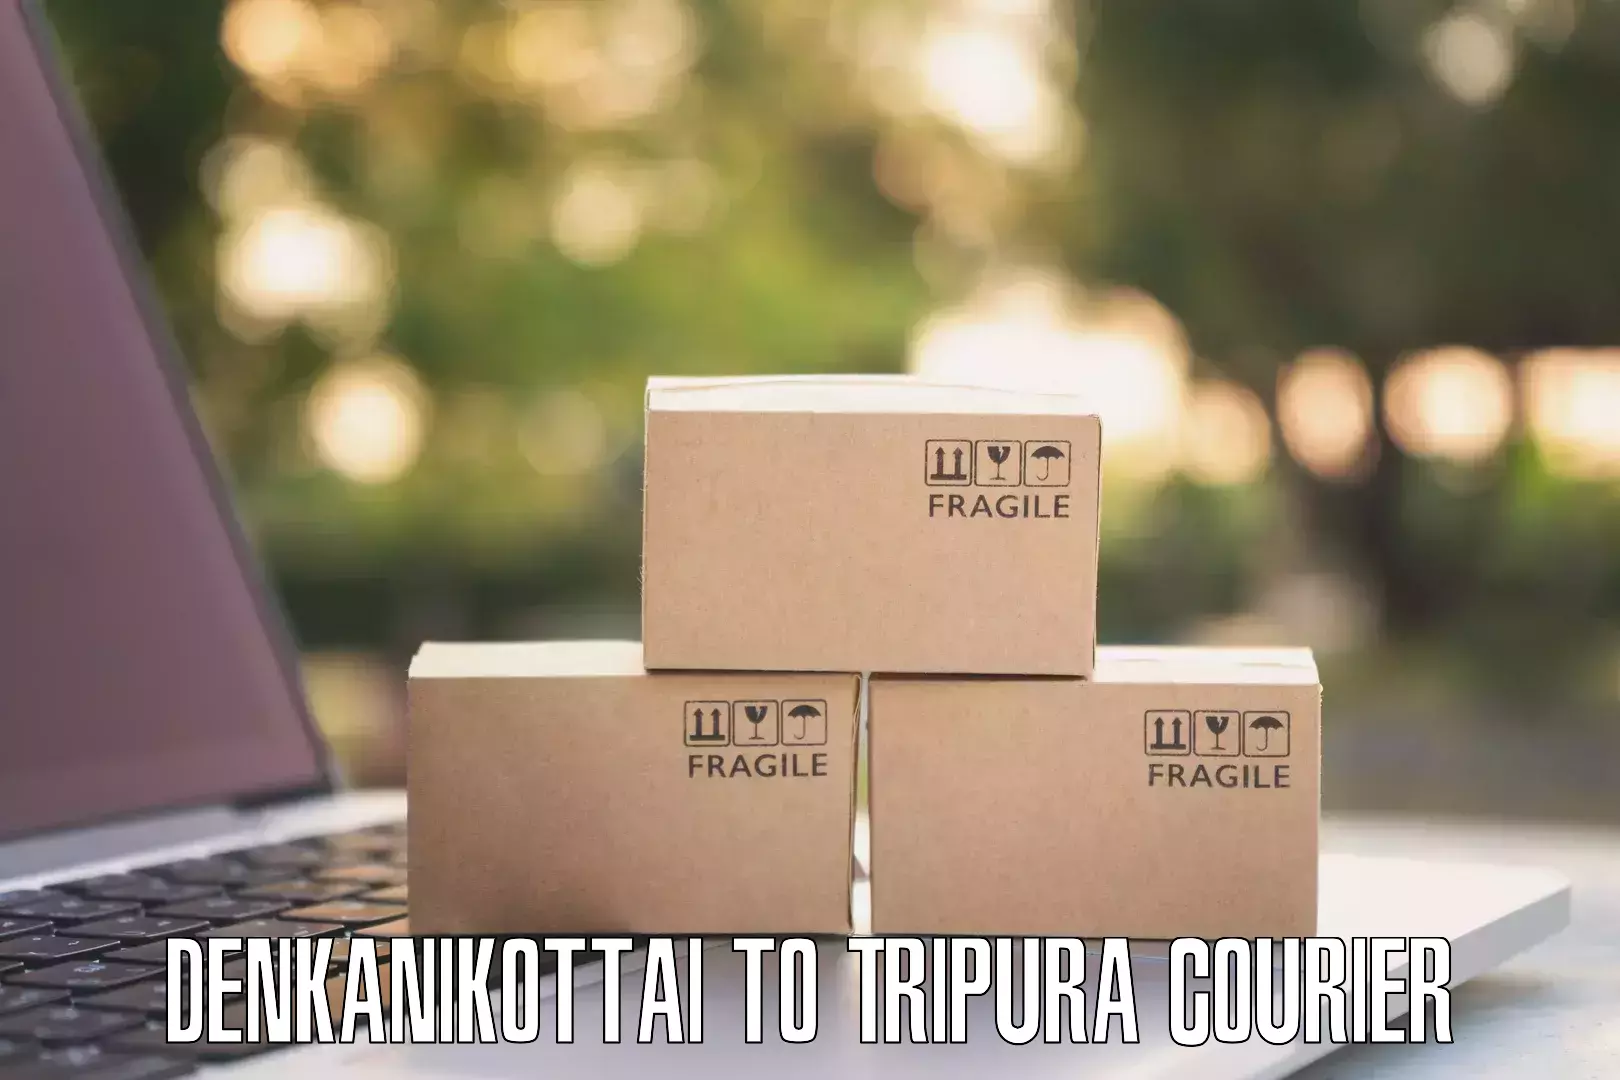 Discount courier rates Denkanikottai to Tripura